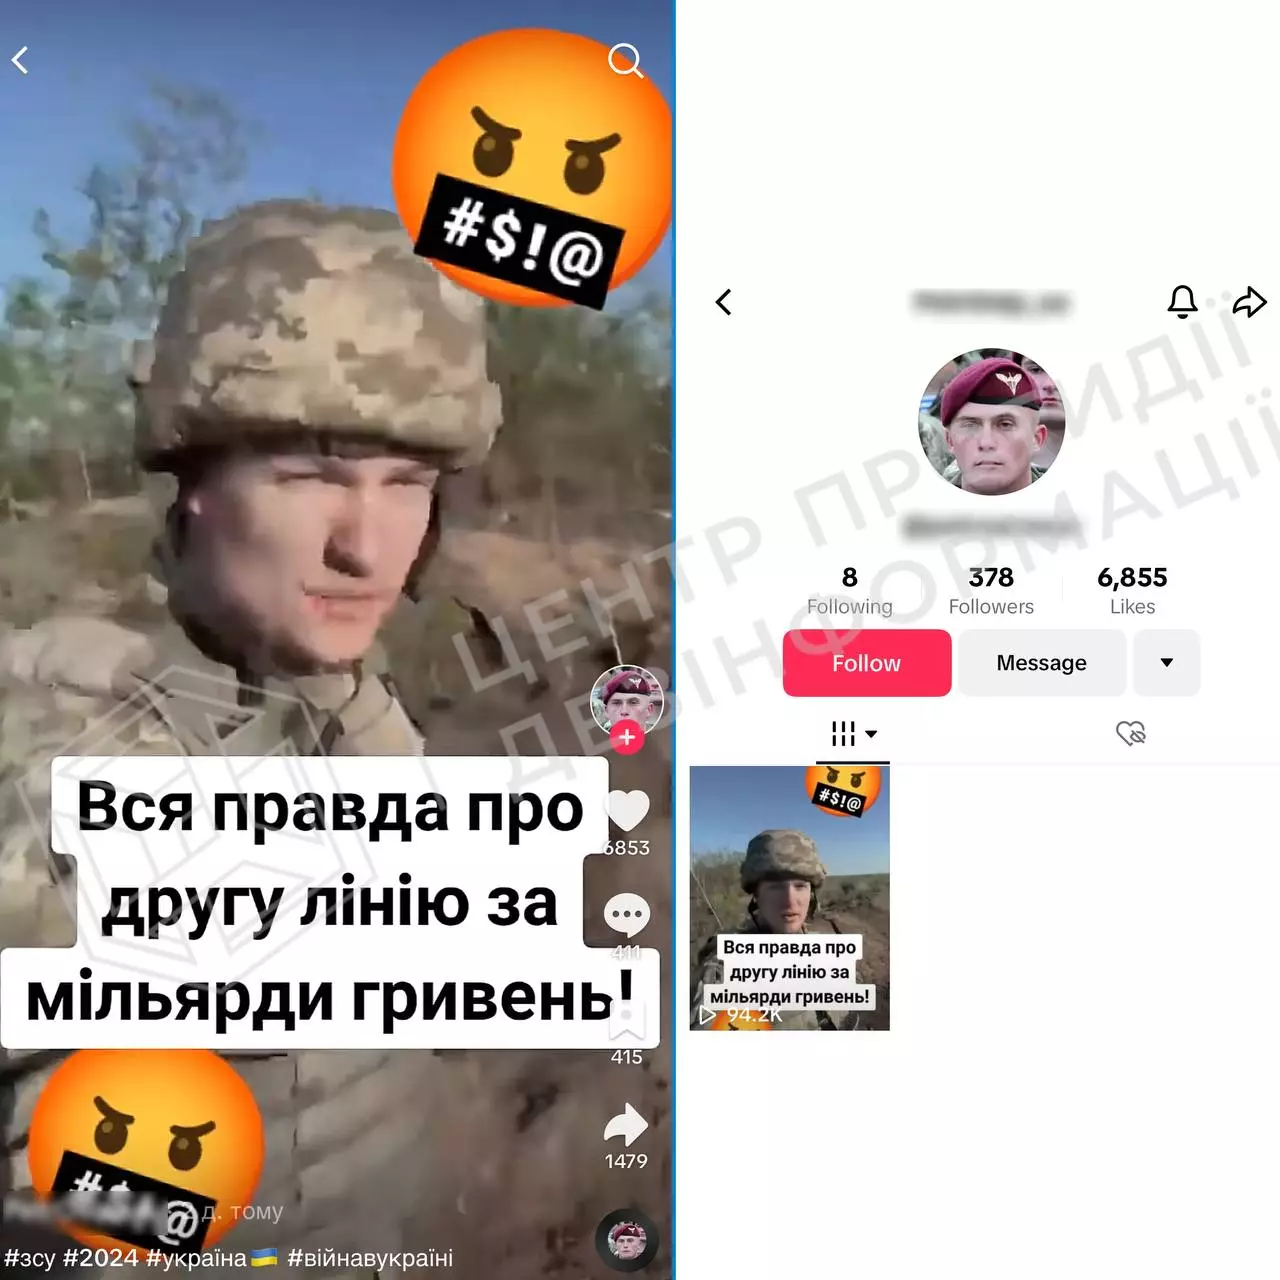 Андрій Коваленко, ЦПД: Росіяни поширюють у тіктоку дезінформацію, використовуючи фото українських військових